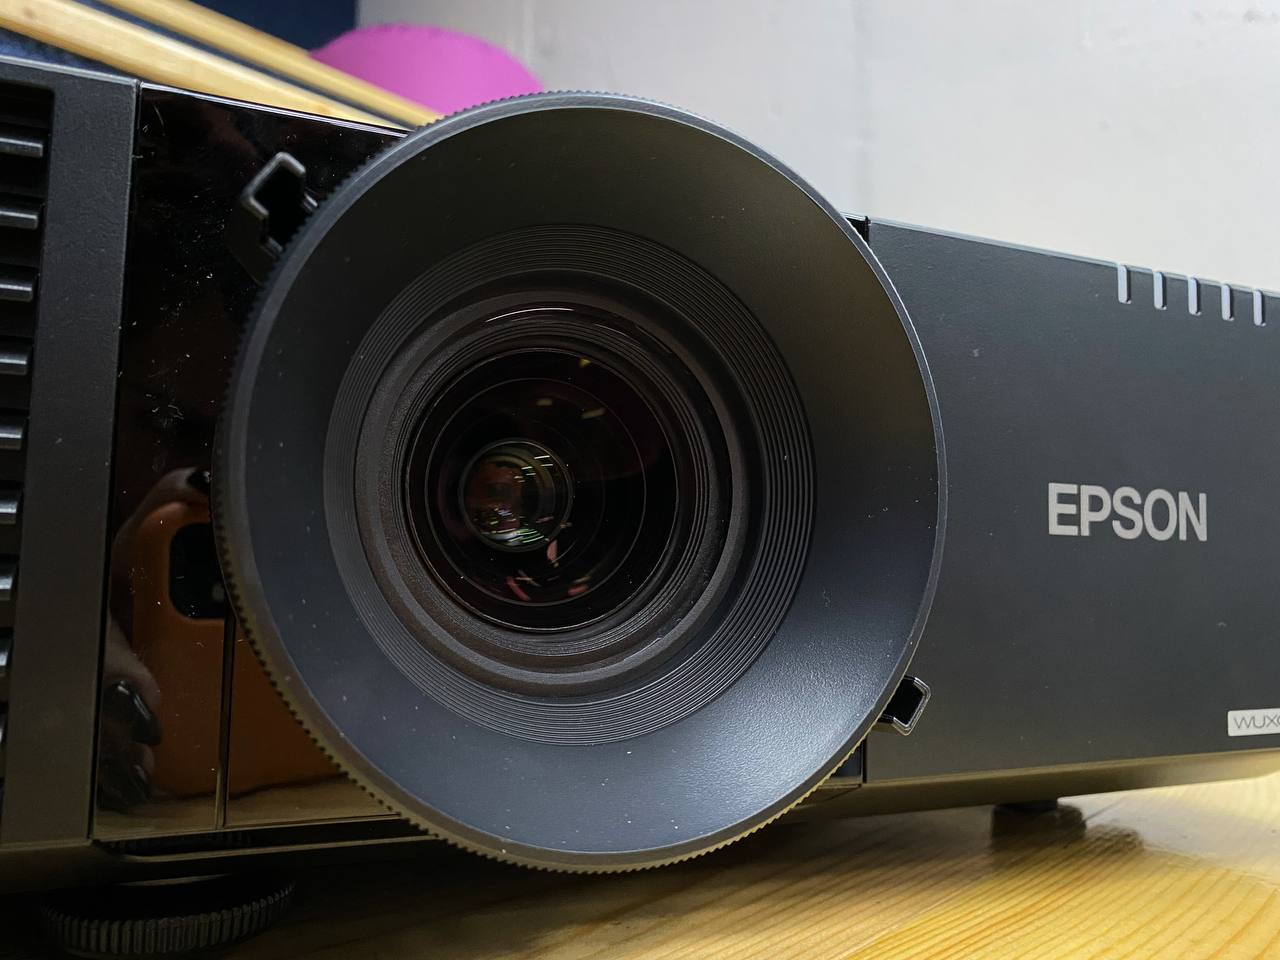 Путешествие в историю кино с мощным проектором Epson EB-L615U